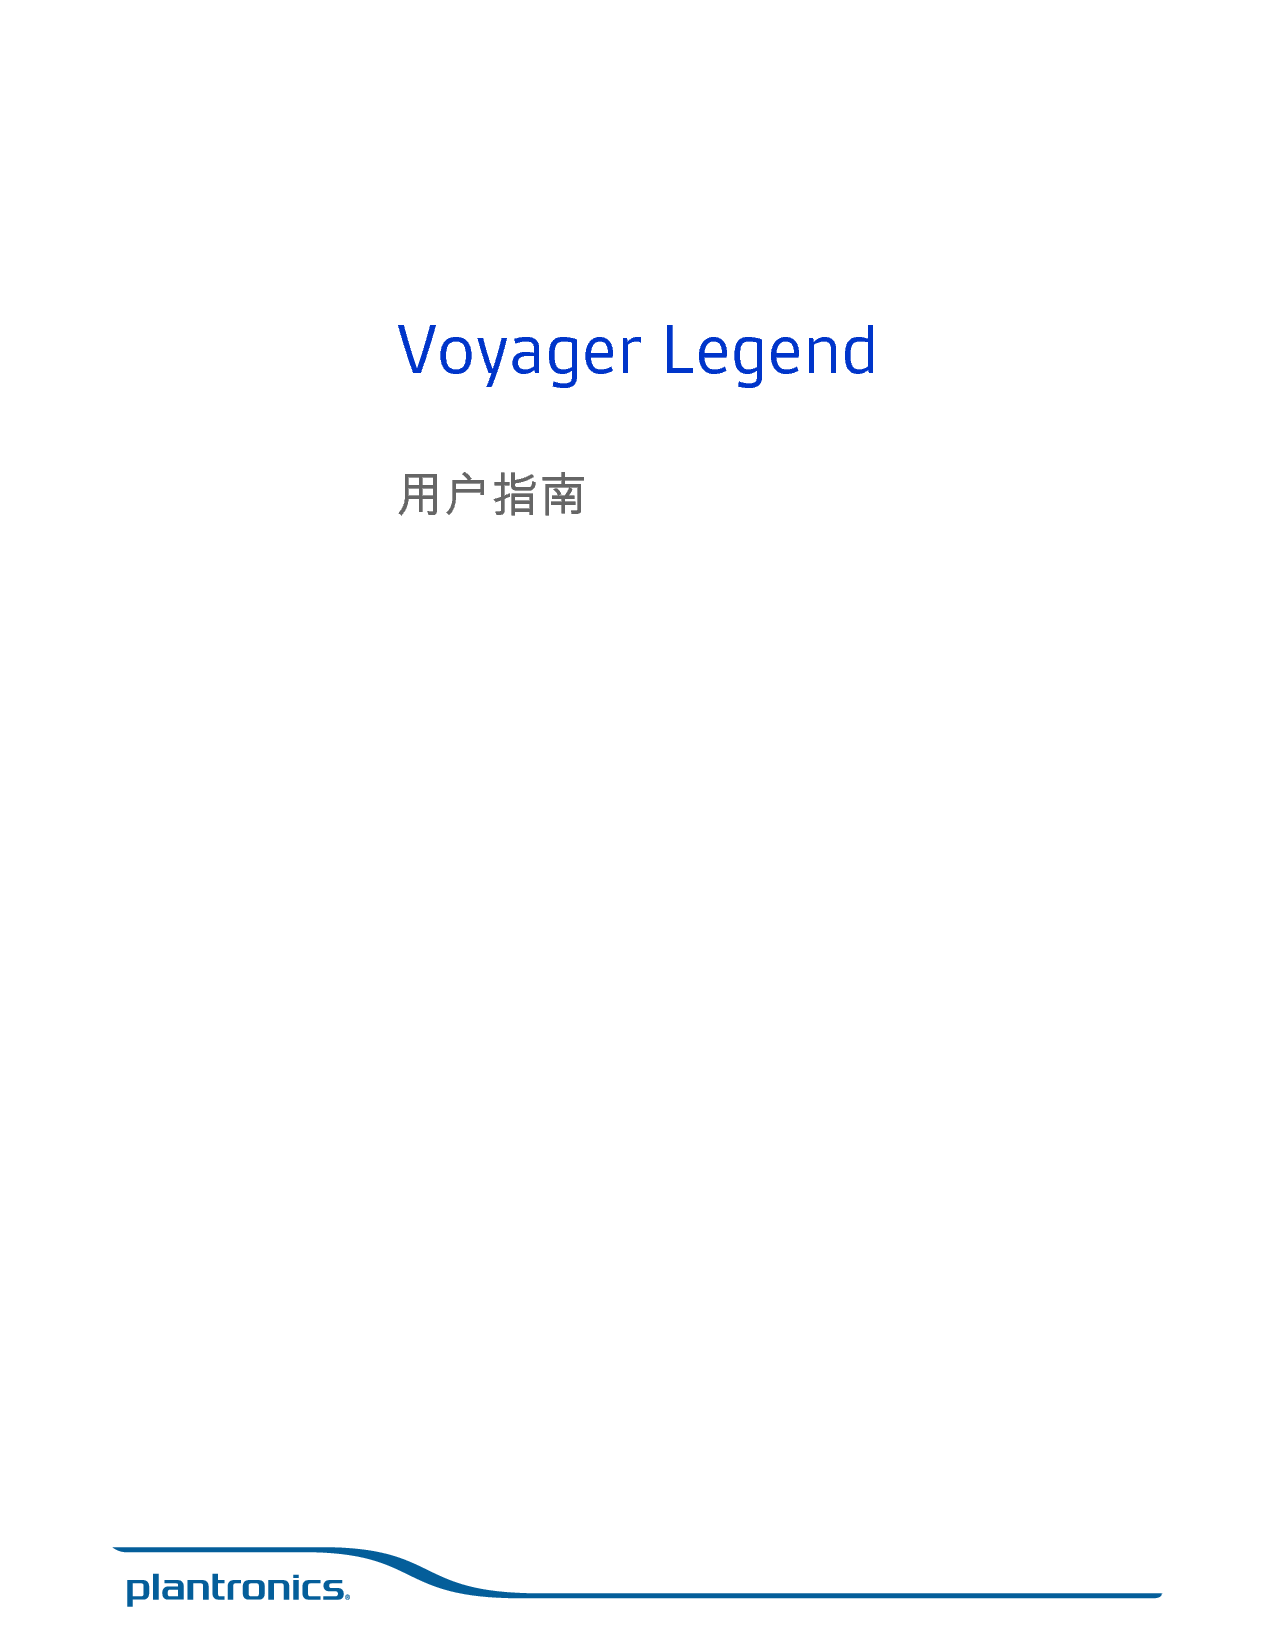 缤特力 Plantronics Voyager Legend 用户指南 封面